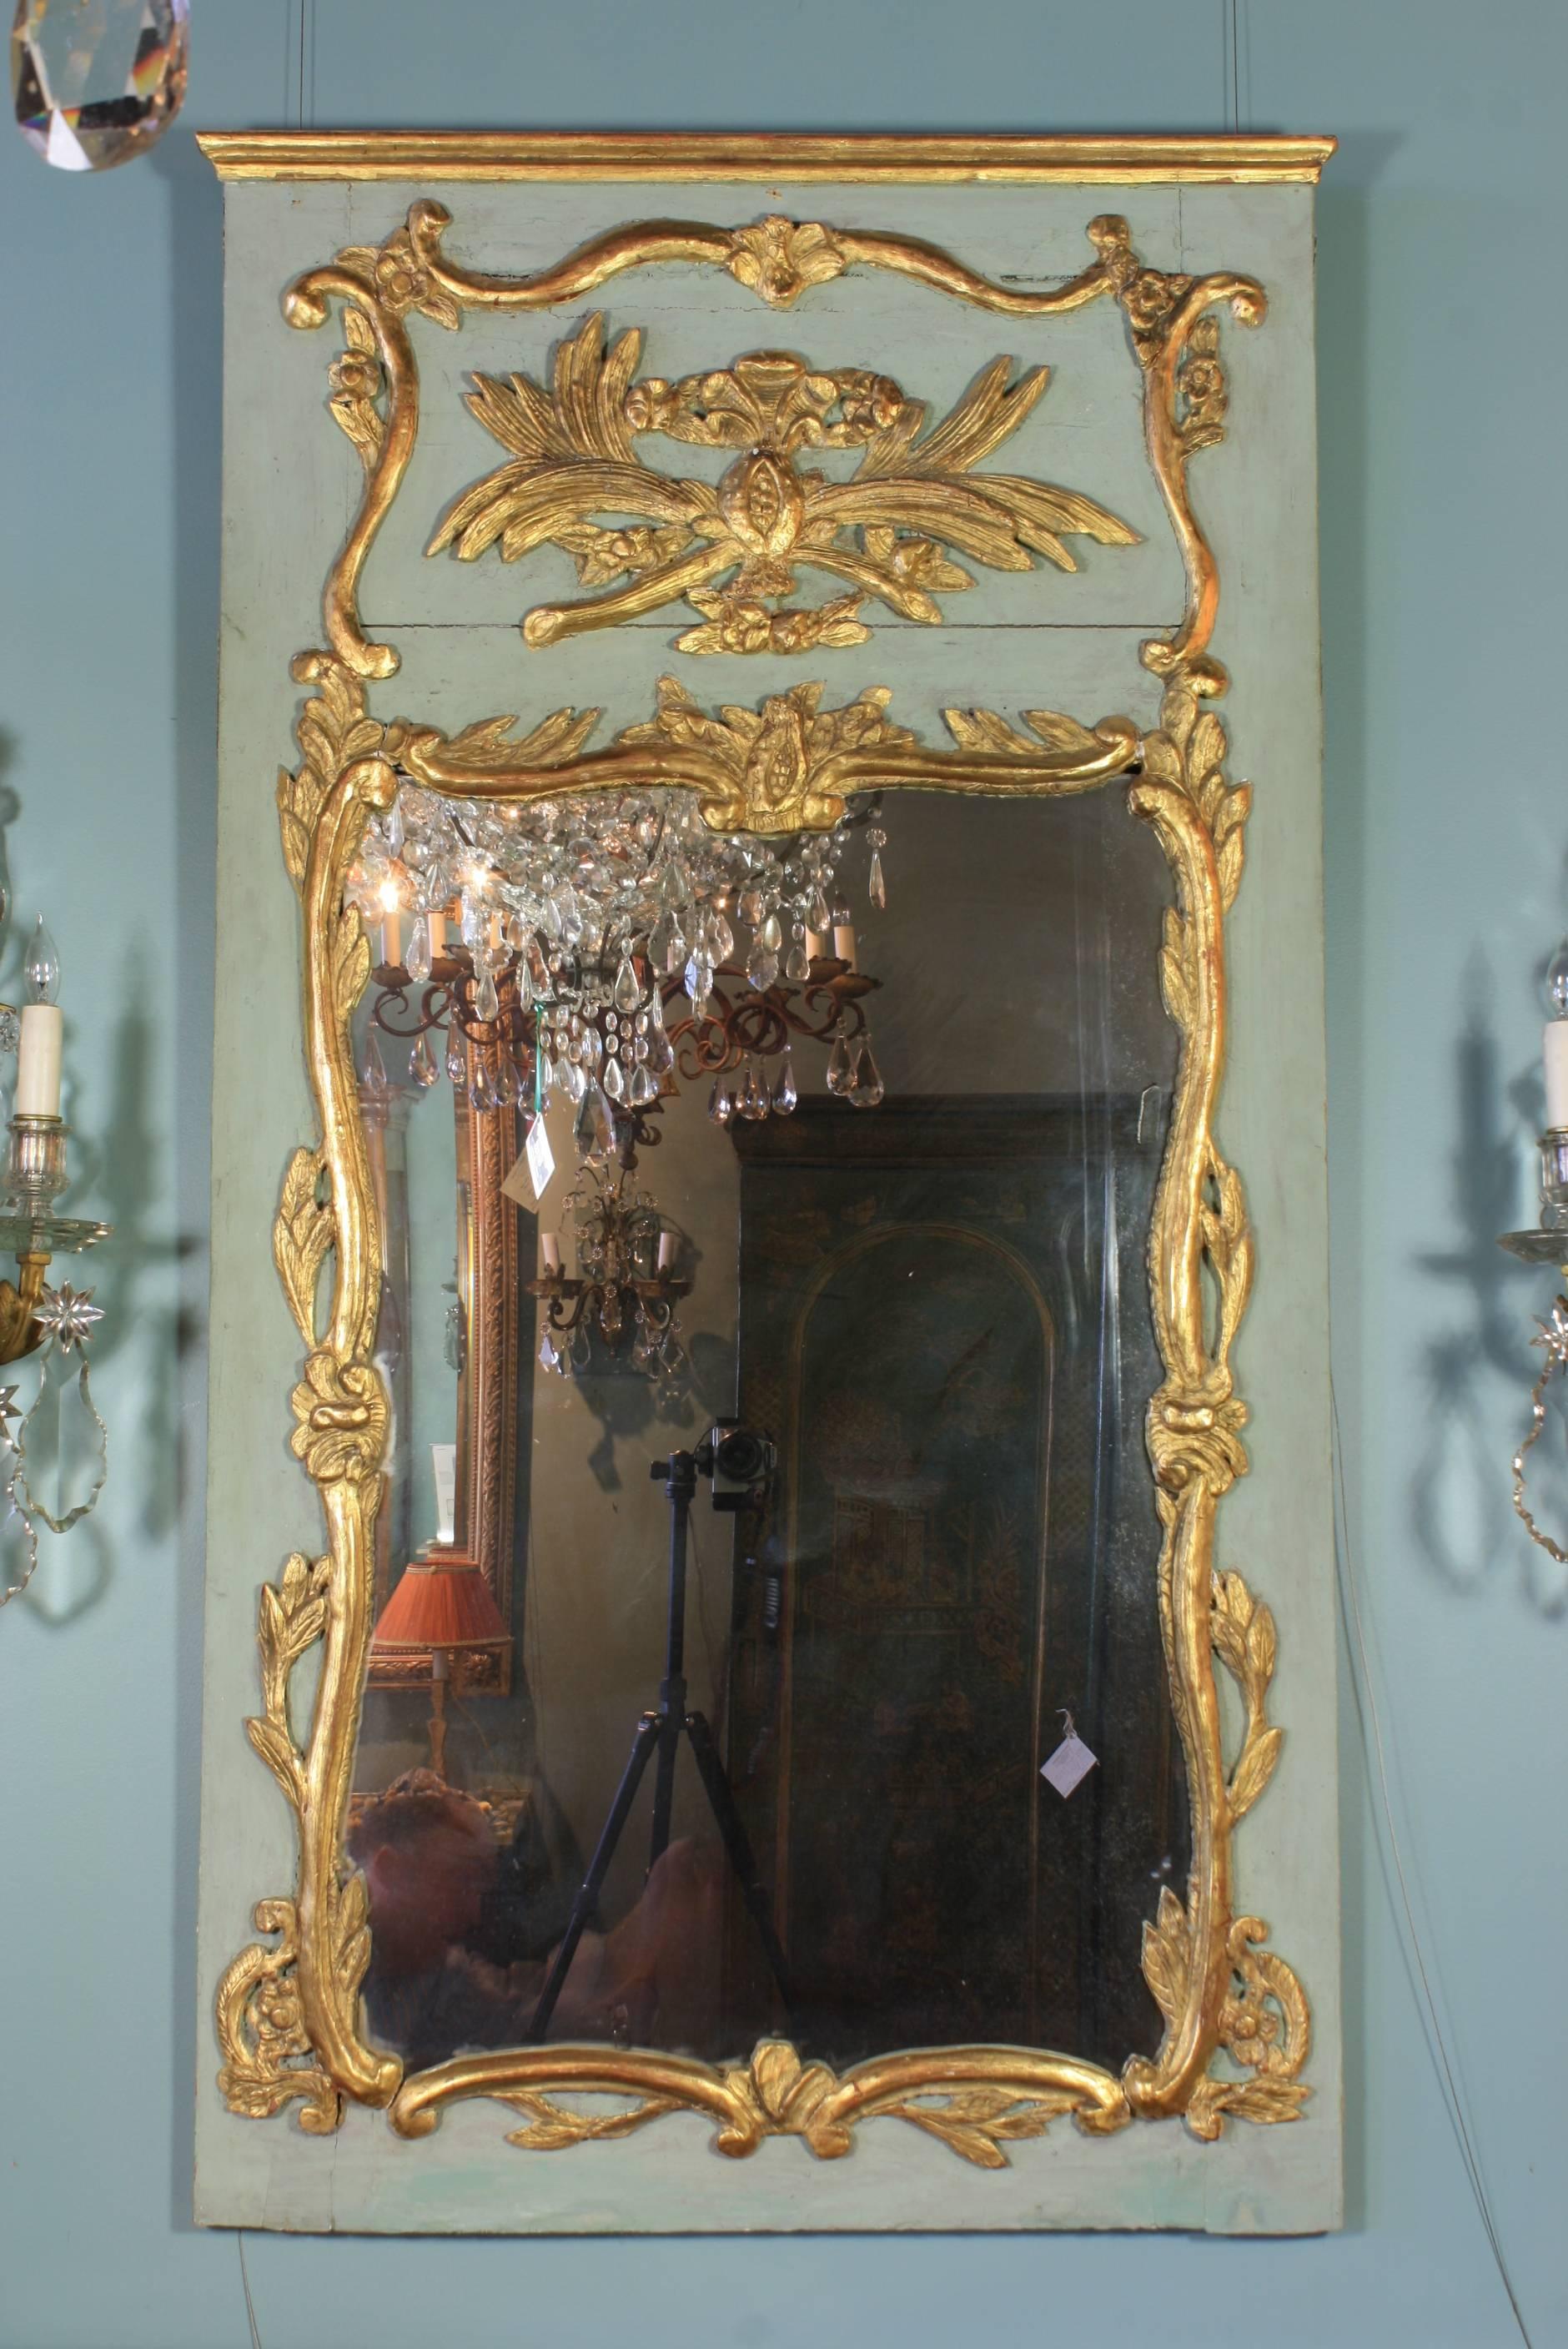 Miroir trumeau français d'époque Louis XV (vers 1750) provenant de Normandie, peint et doré à la feuille avec des grenades stylisées, des volutes, des fleurs, des feuilles et autres ornements rococo. Le verre du miroir est ancien et le miroir a un